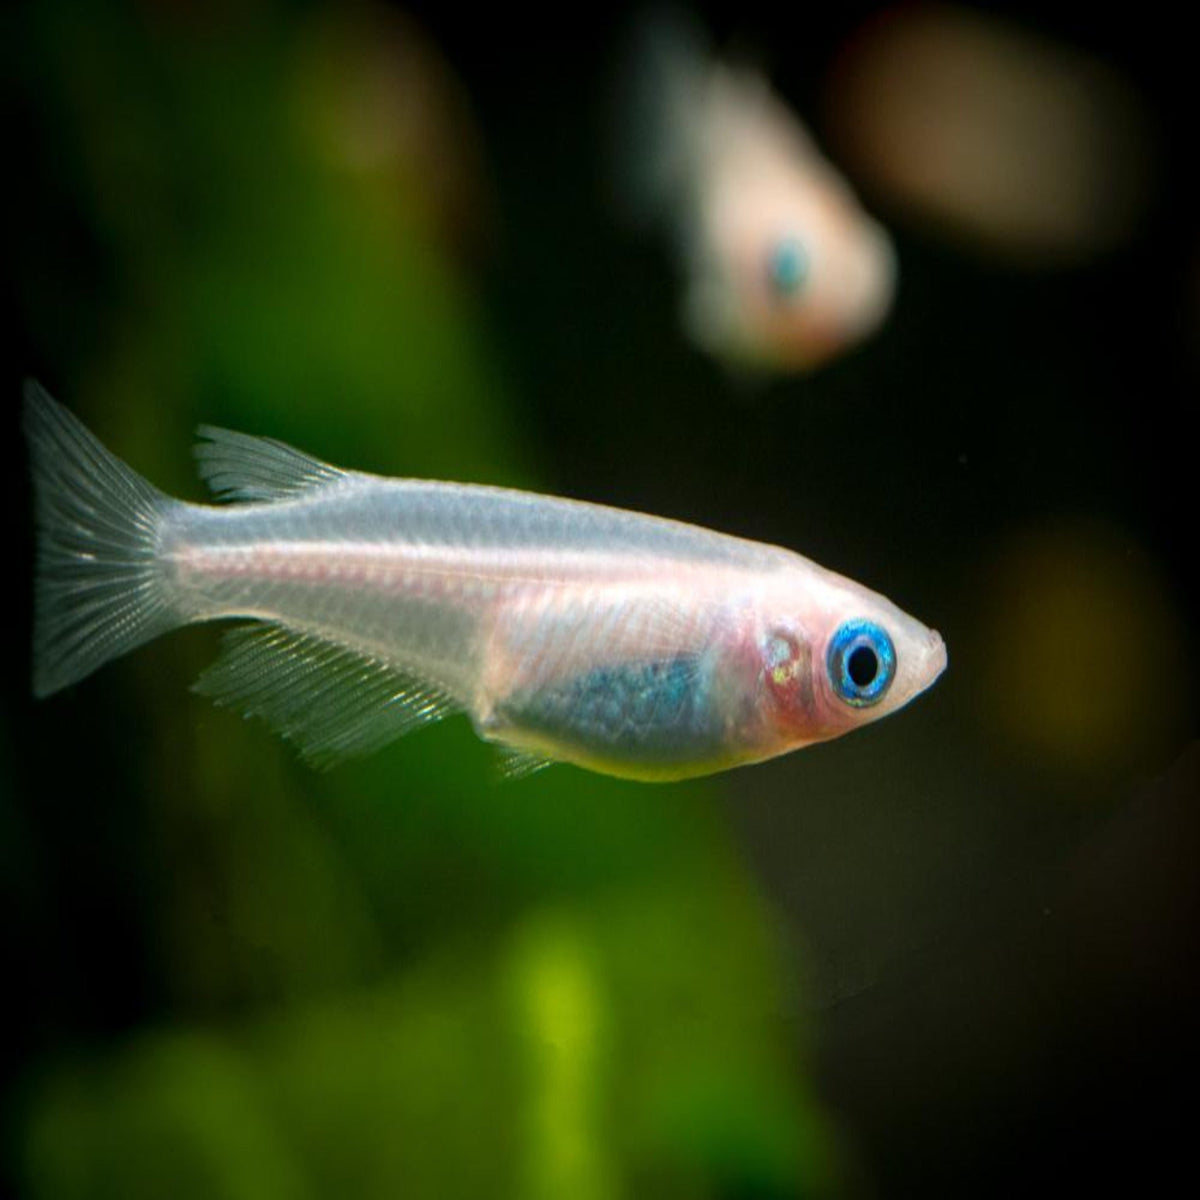 Full White/ Platinum Medaka Rice Fish - Nano Tanks Australia Aquarium Shop